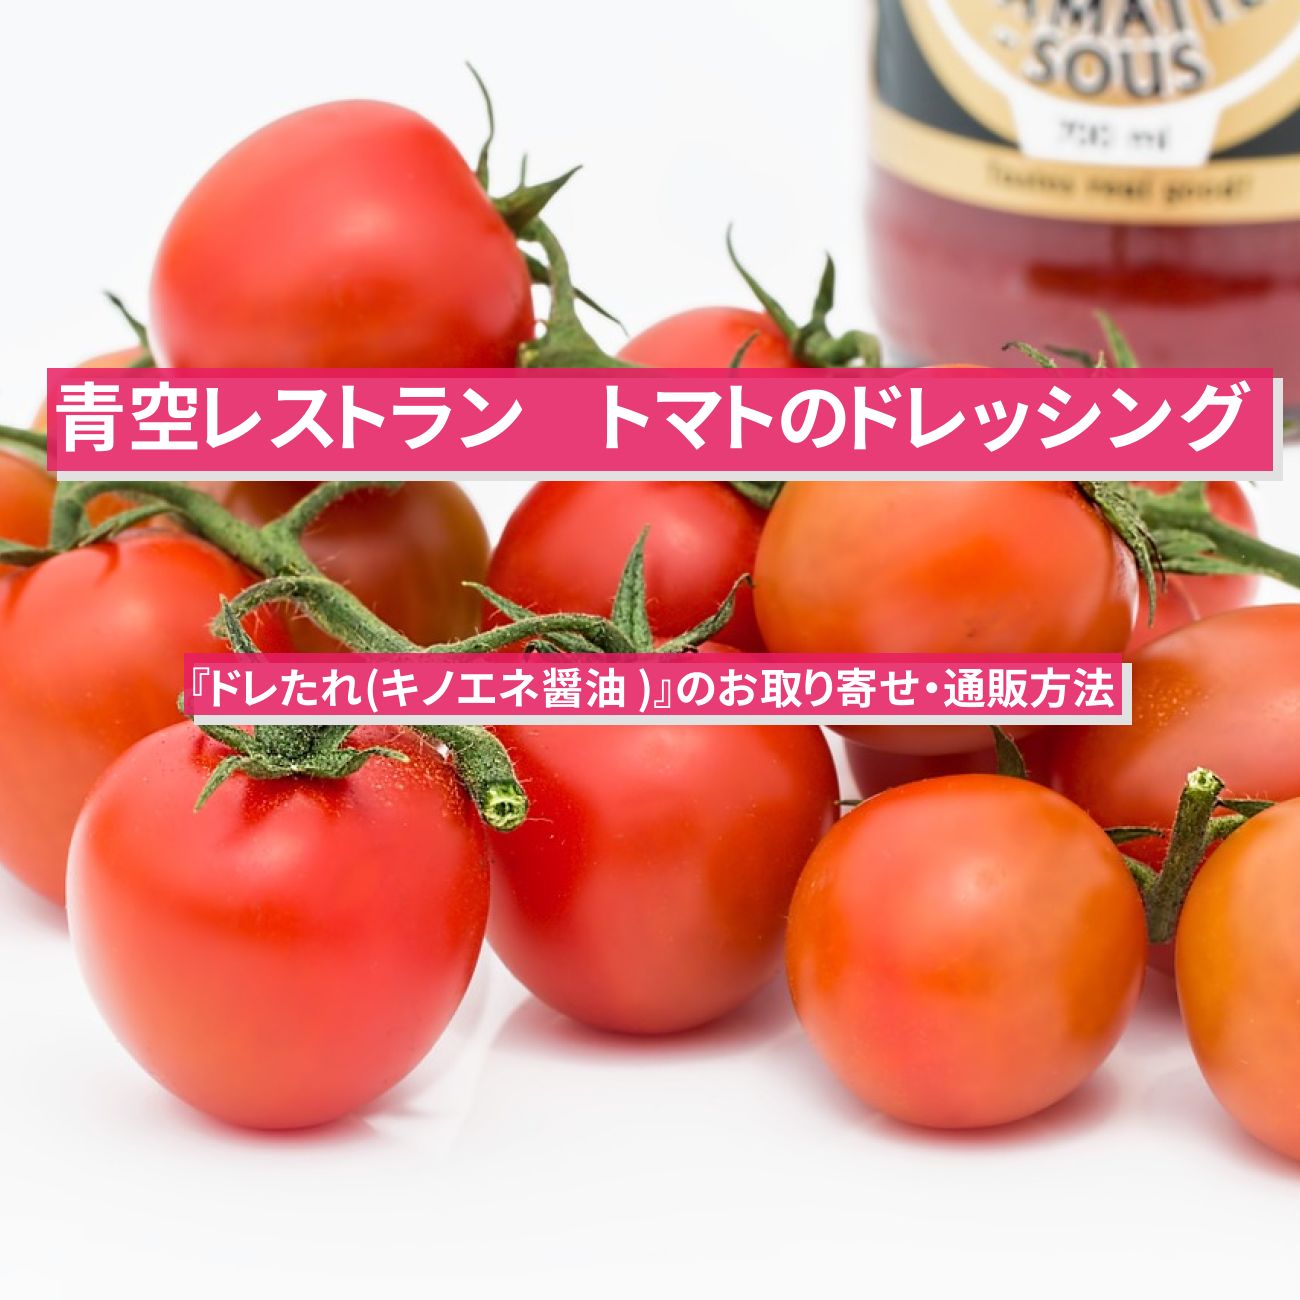 【青空レストラン】トマトのドレッシング『ドレたれ(キノエネ醤油)』のお取り寄せ・通販方法